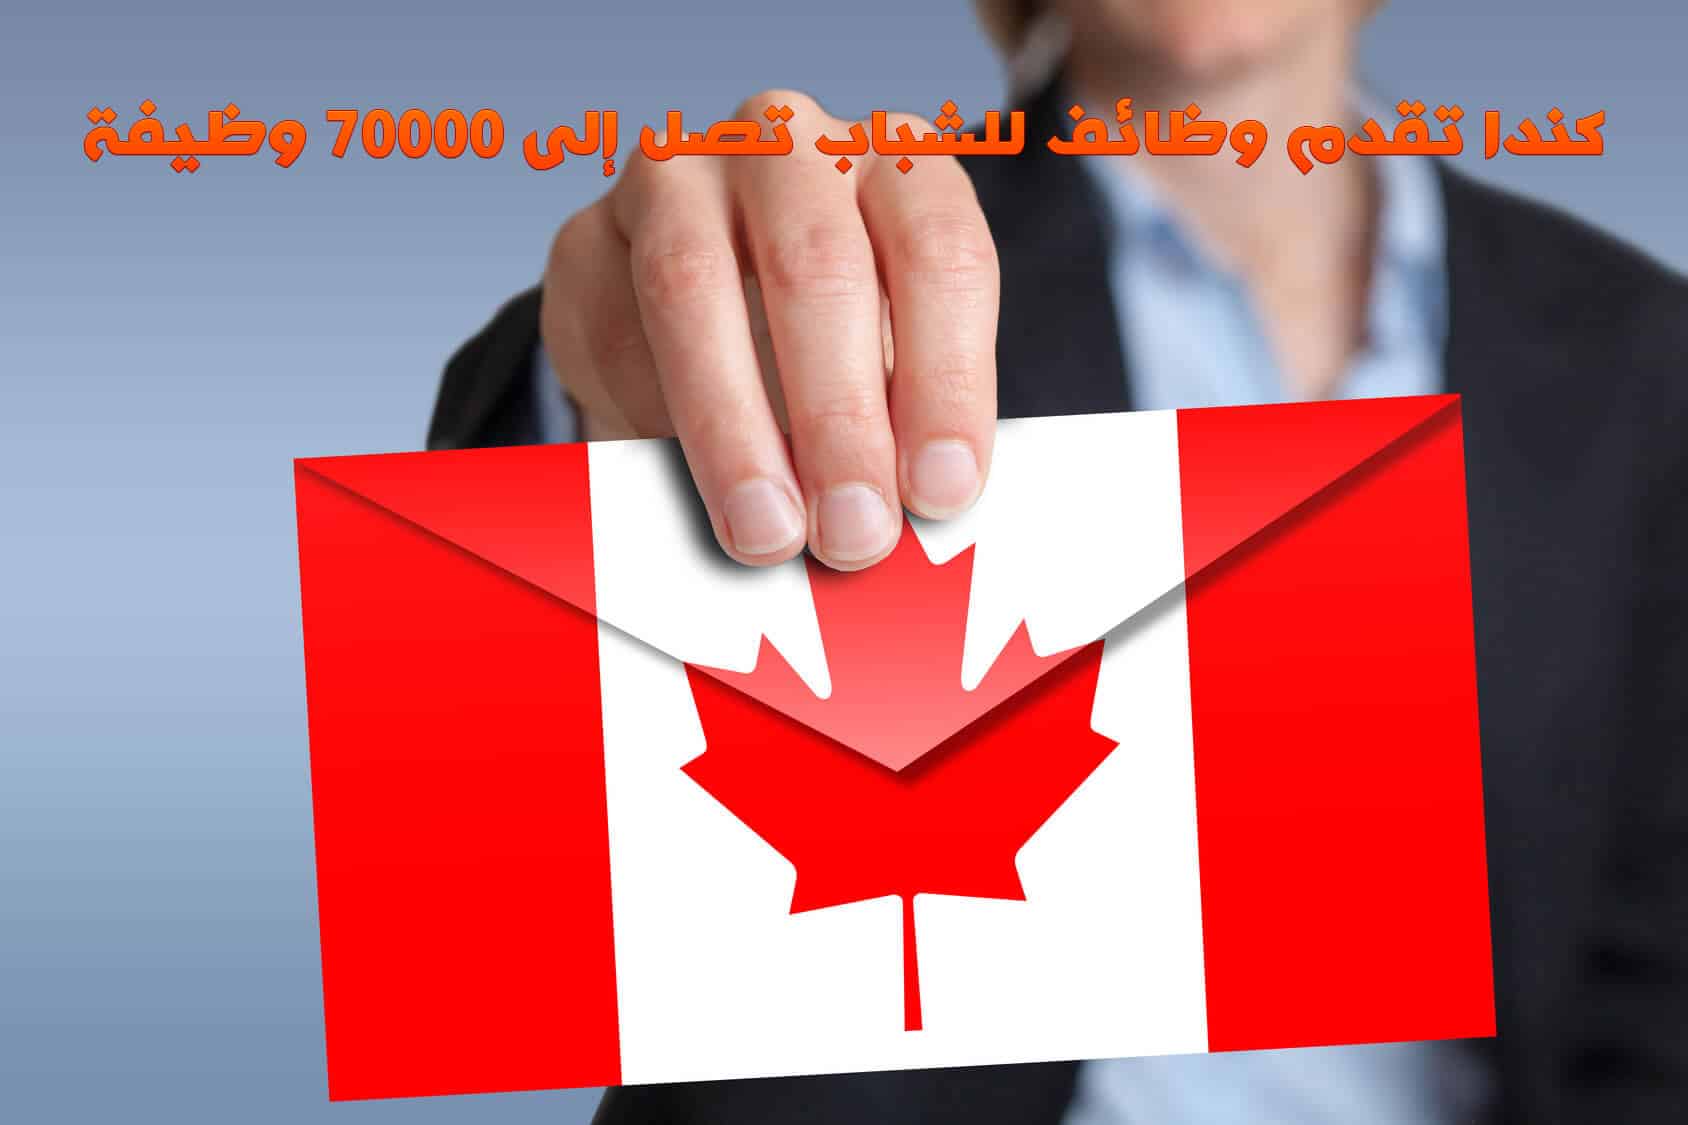 كندا تقدم وظائف للشباب تصل إلى 70000 وظيفة